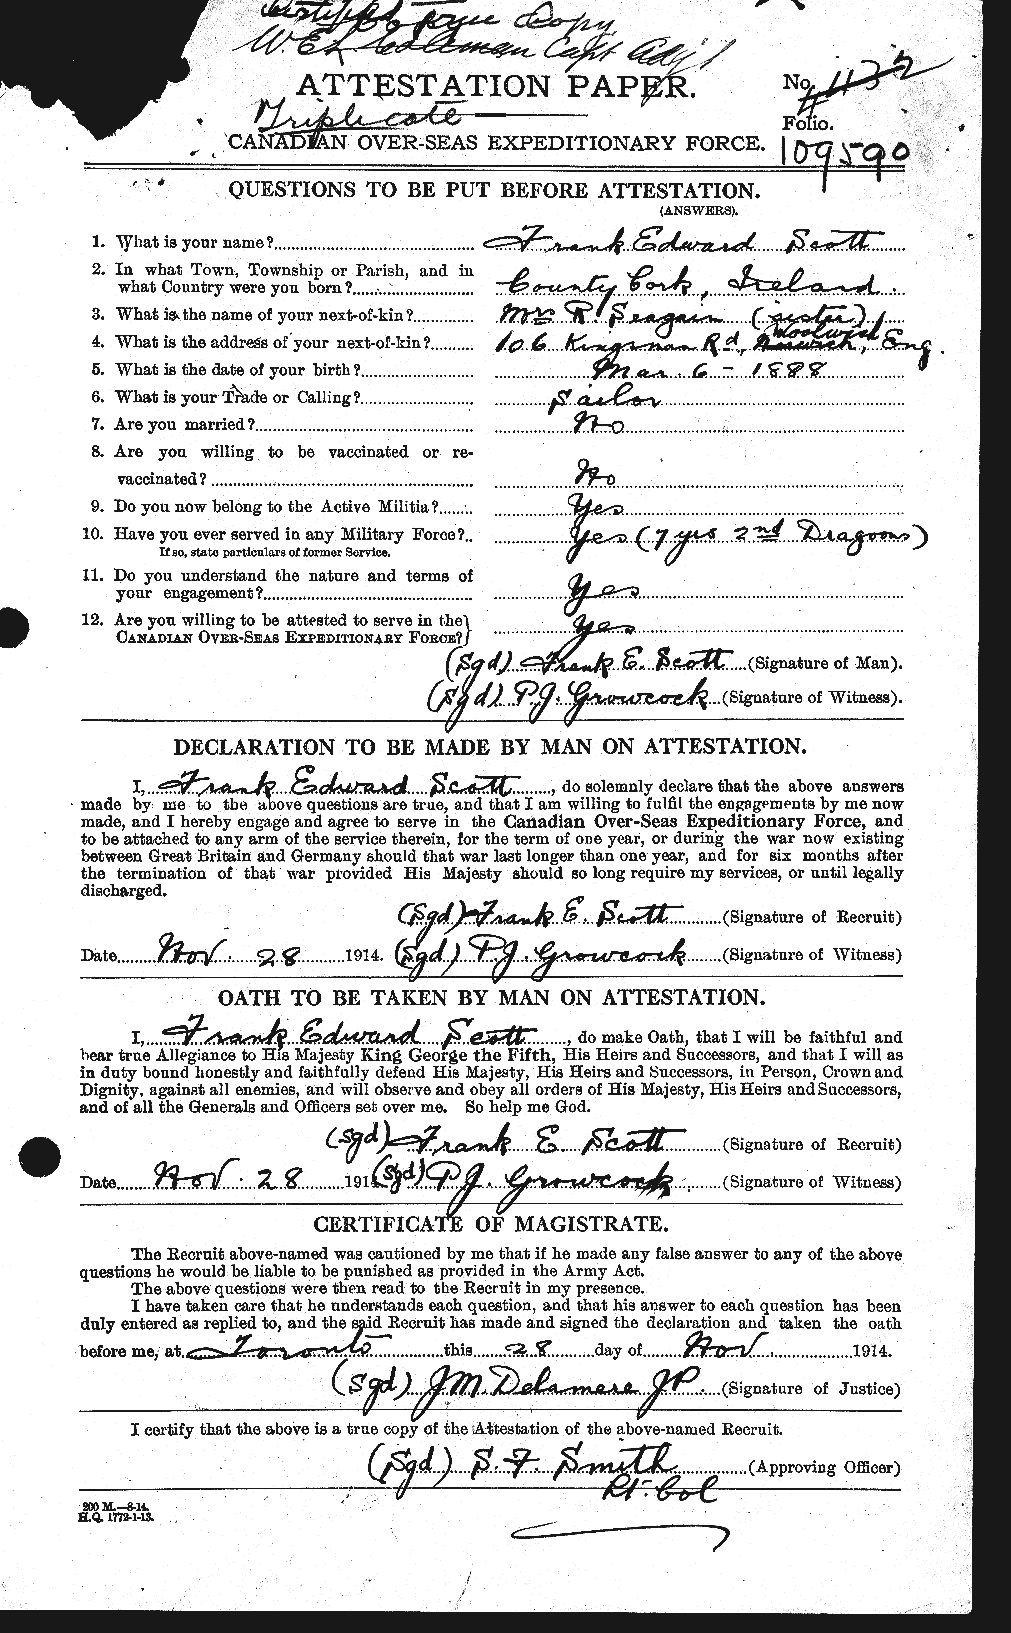 Dossiers du Personnel de la Première Guerre mondiale - CEC 084702a